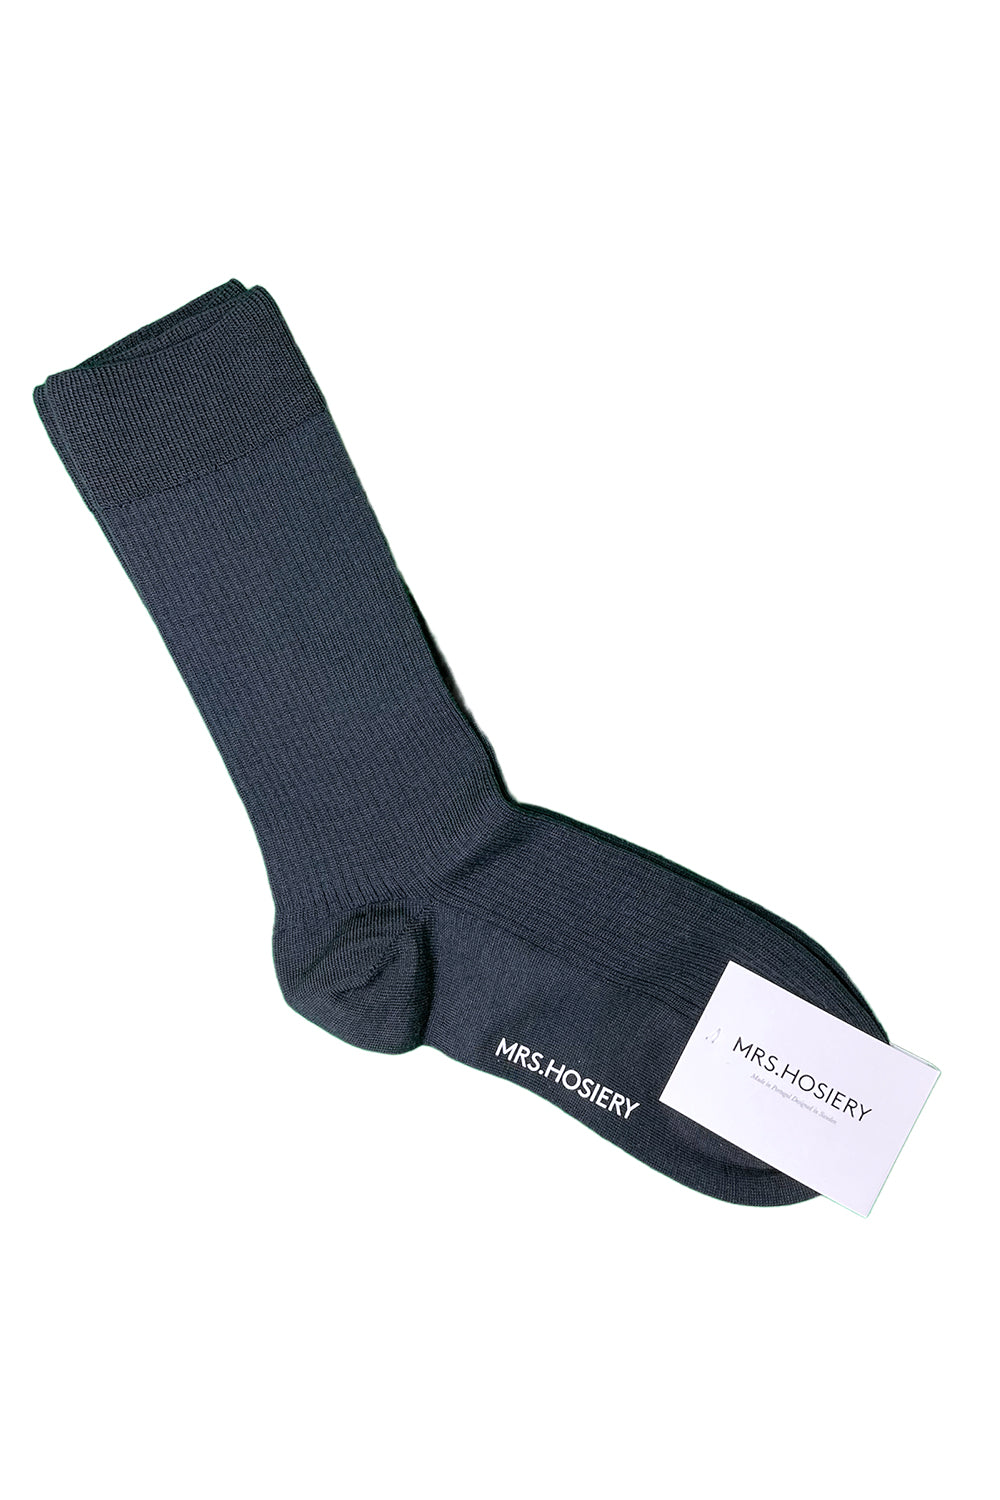 Merino Classic Socks-Navy